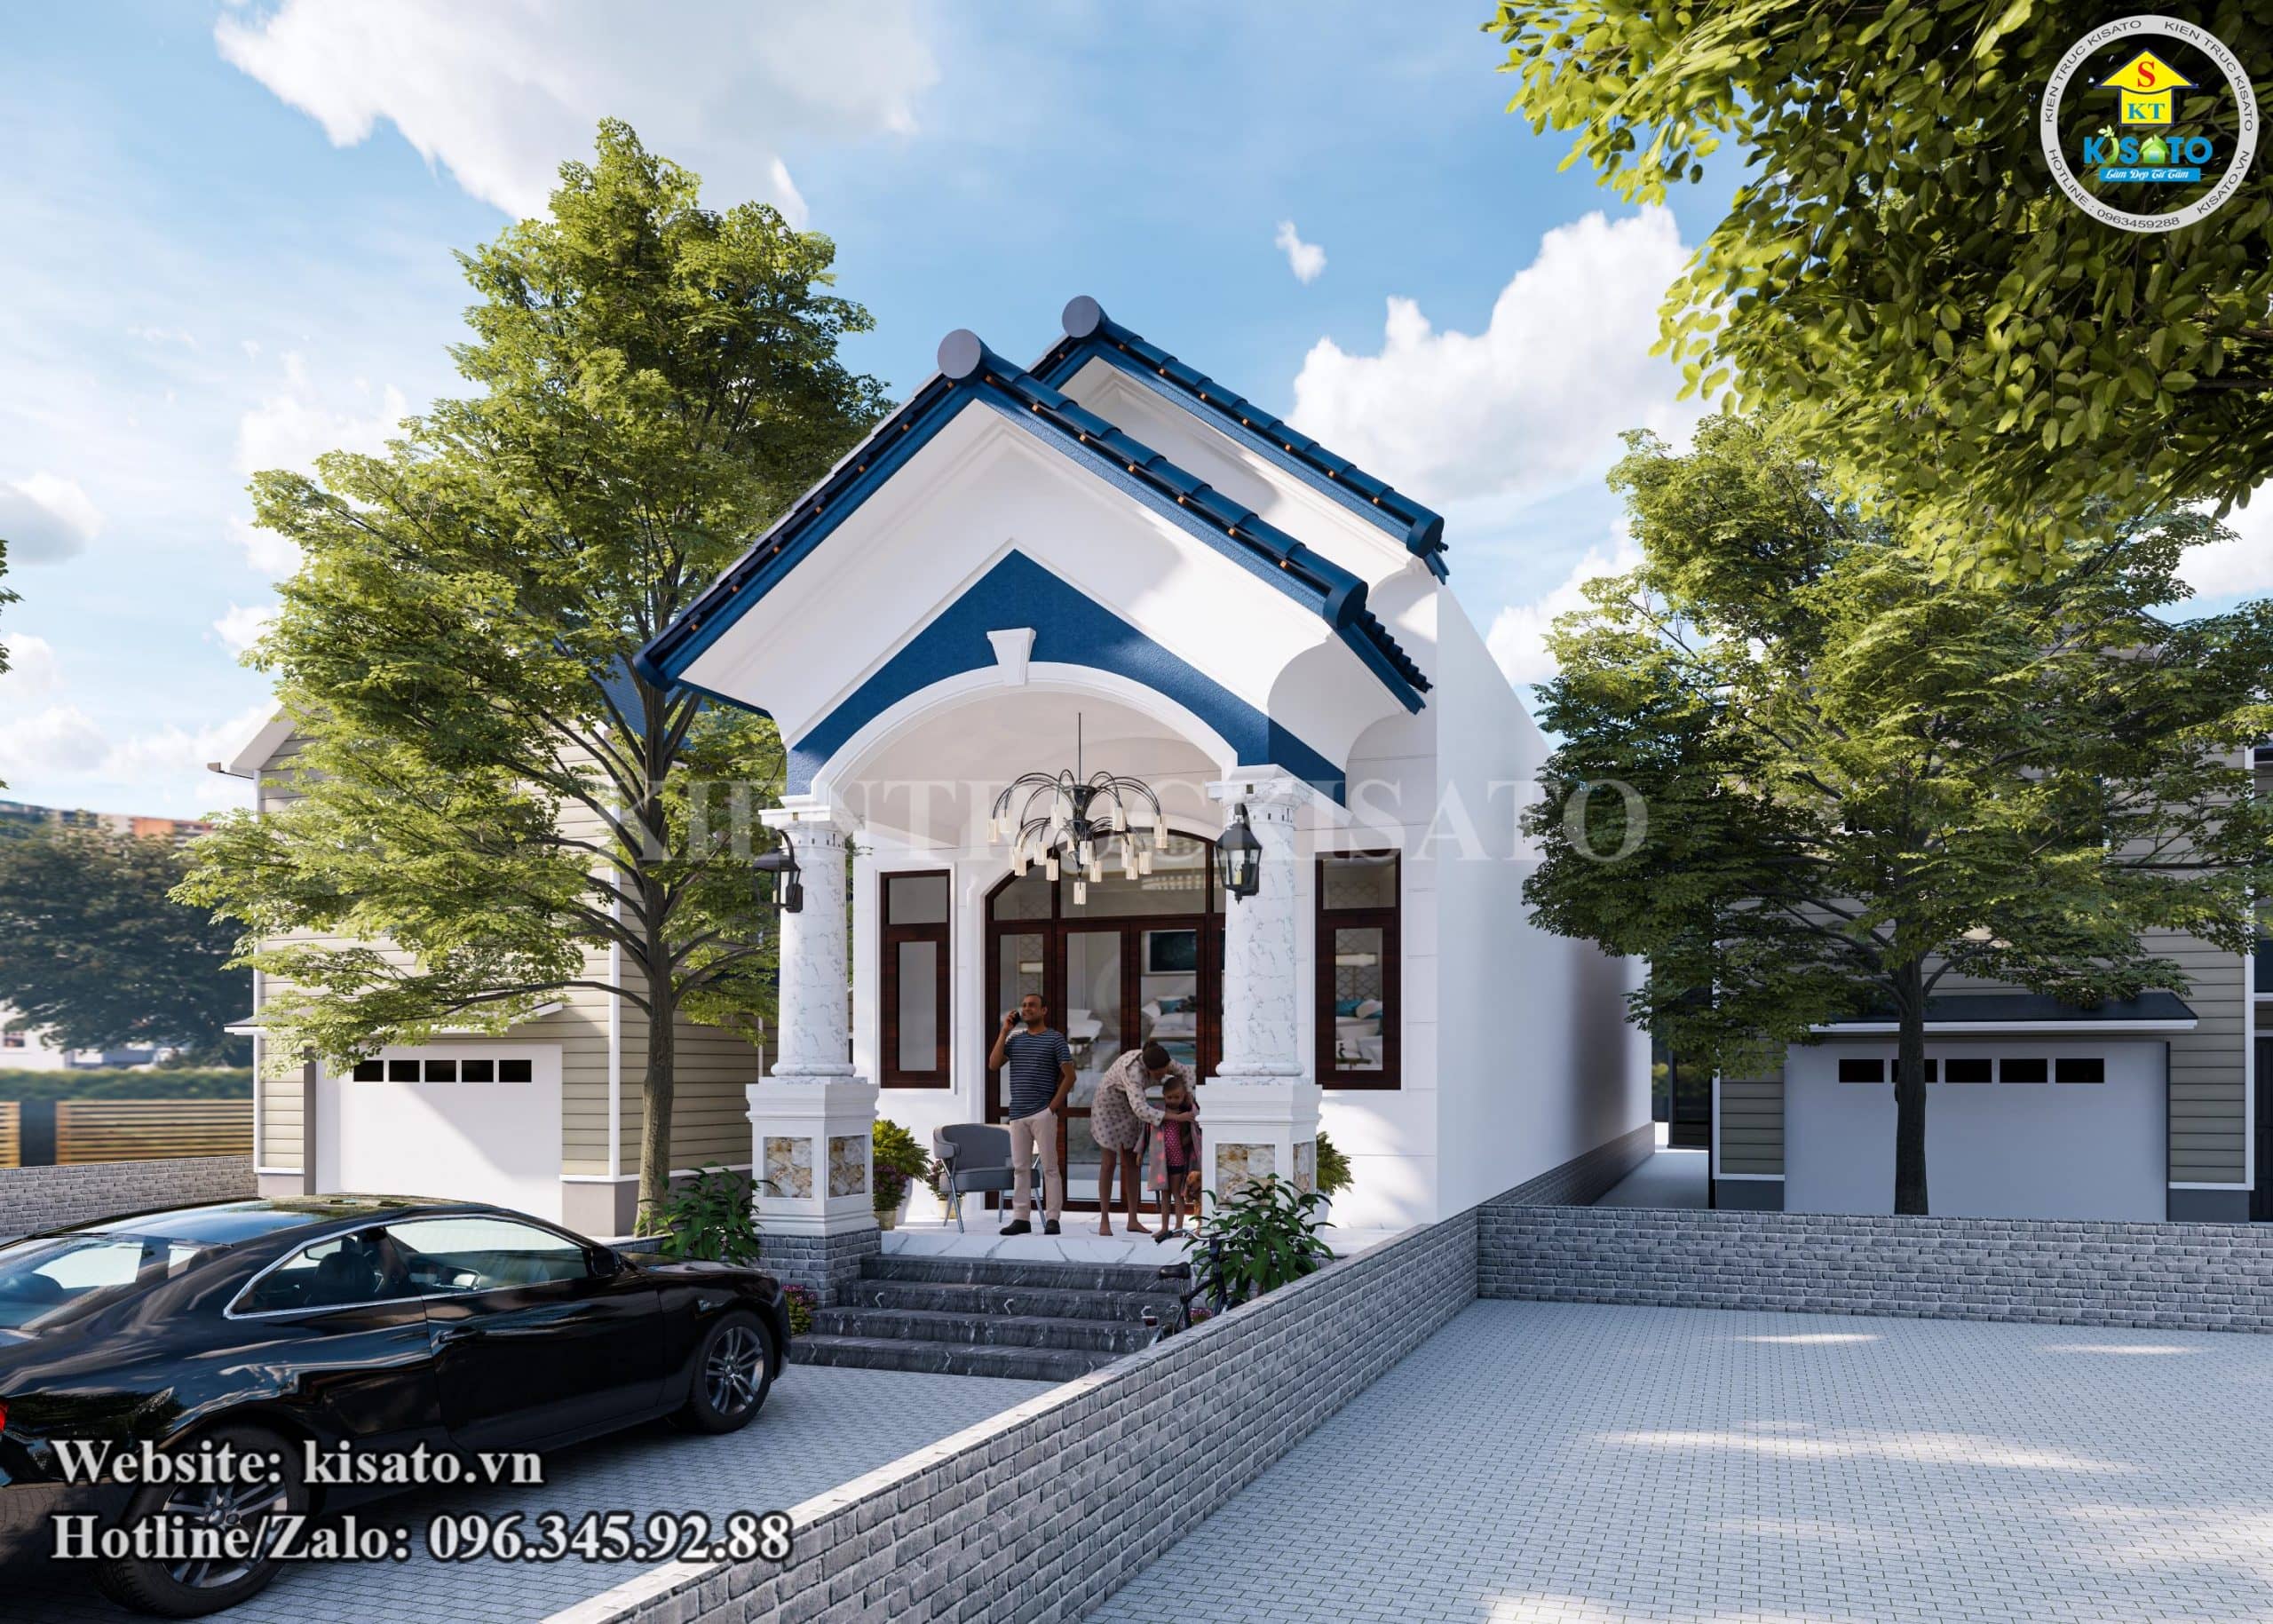 Phối cảnh 3D mẫu nhà vườn cấp 4 mái Thái đẹp tại Krông A Na - Đắk Lắk